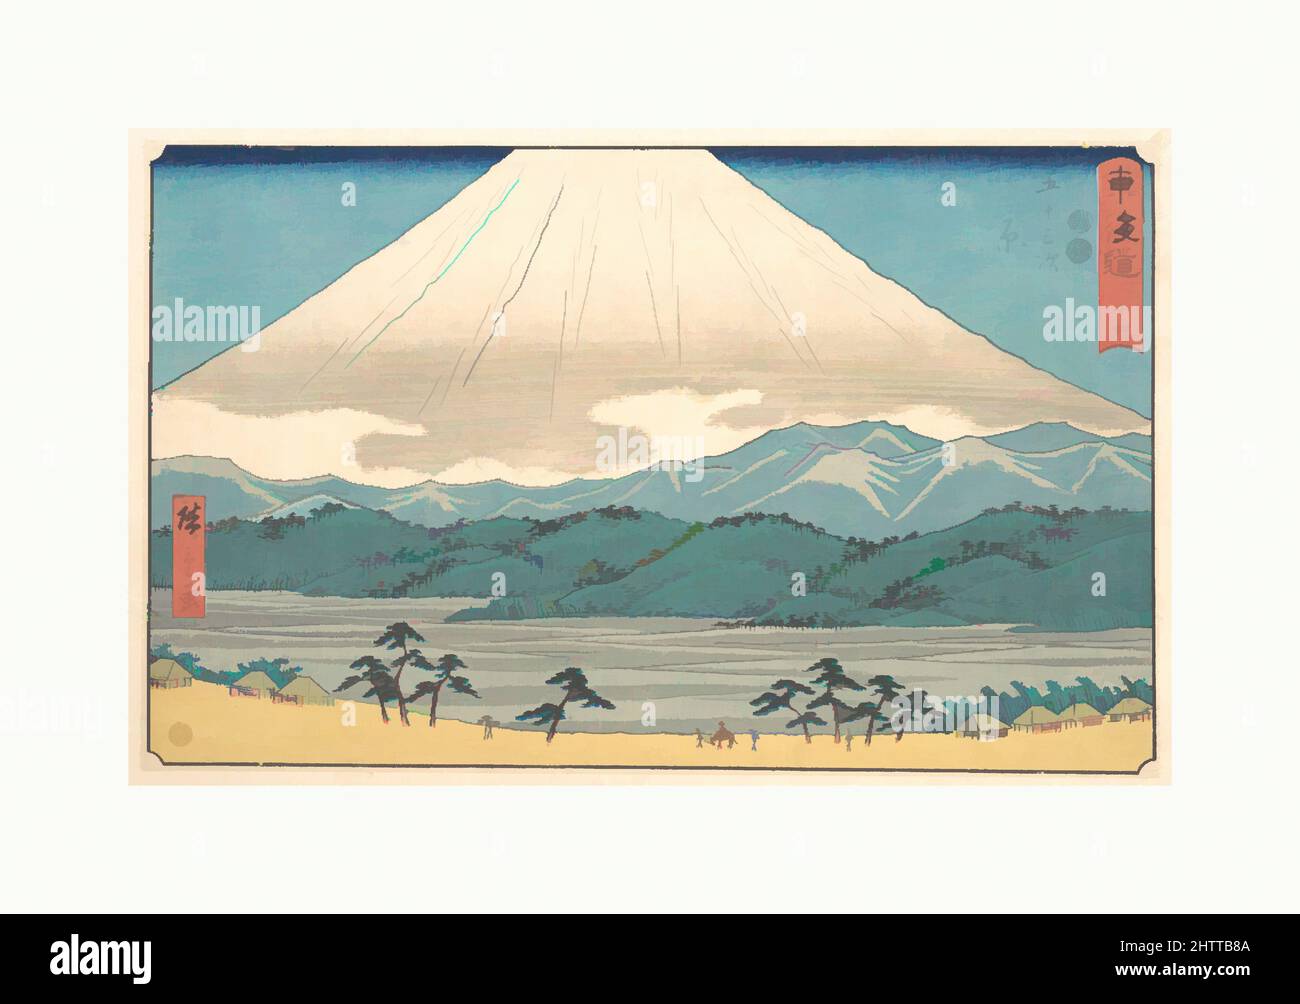 Art inspiré par 東海道五十三次 原, Hara, époque Edo (1615–1868), env. 1848–49, Japon, impression polychrome sur bois; encre et couleur sur papier, total: 8 3/4 x 13 3/4in. (22,2 x 34,9cm), estampes, Utagawa Hiroshige (japonais, Tokyo (Edo) 1797–1858 Tokyo (Edo)), la vue du Mont Fuji est virtuellement, les œuvres classiques modernisées par Artotop avec une touche de modernité. Formes, couleur et valeur, impact visuel accrocheur sur l'art émotions par la liberté d'œuvres d'art d'une manière contemporaine. Un message intemporel qui cherche une nouvelle direction créative. Artistes qui se tournent vers le support numérique et créent le NFT Artotop Banque D'Images